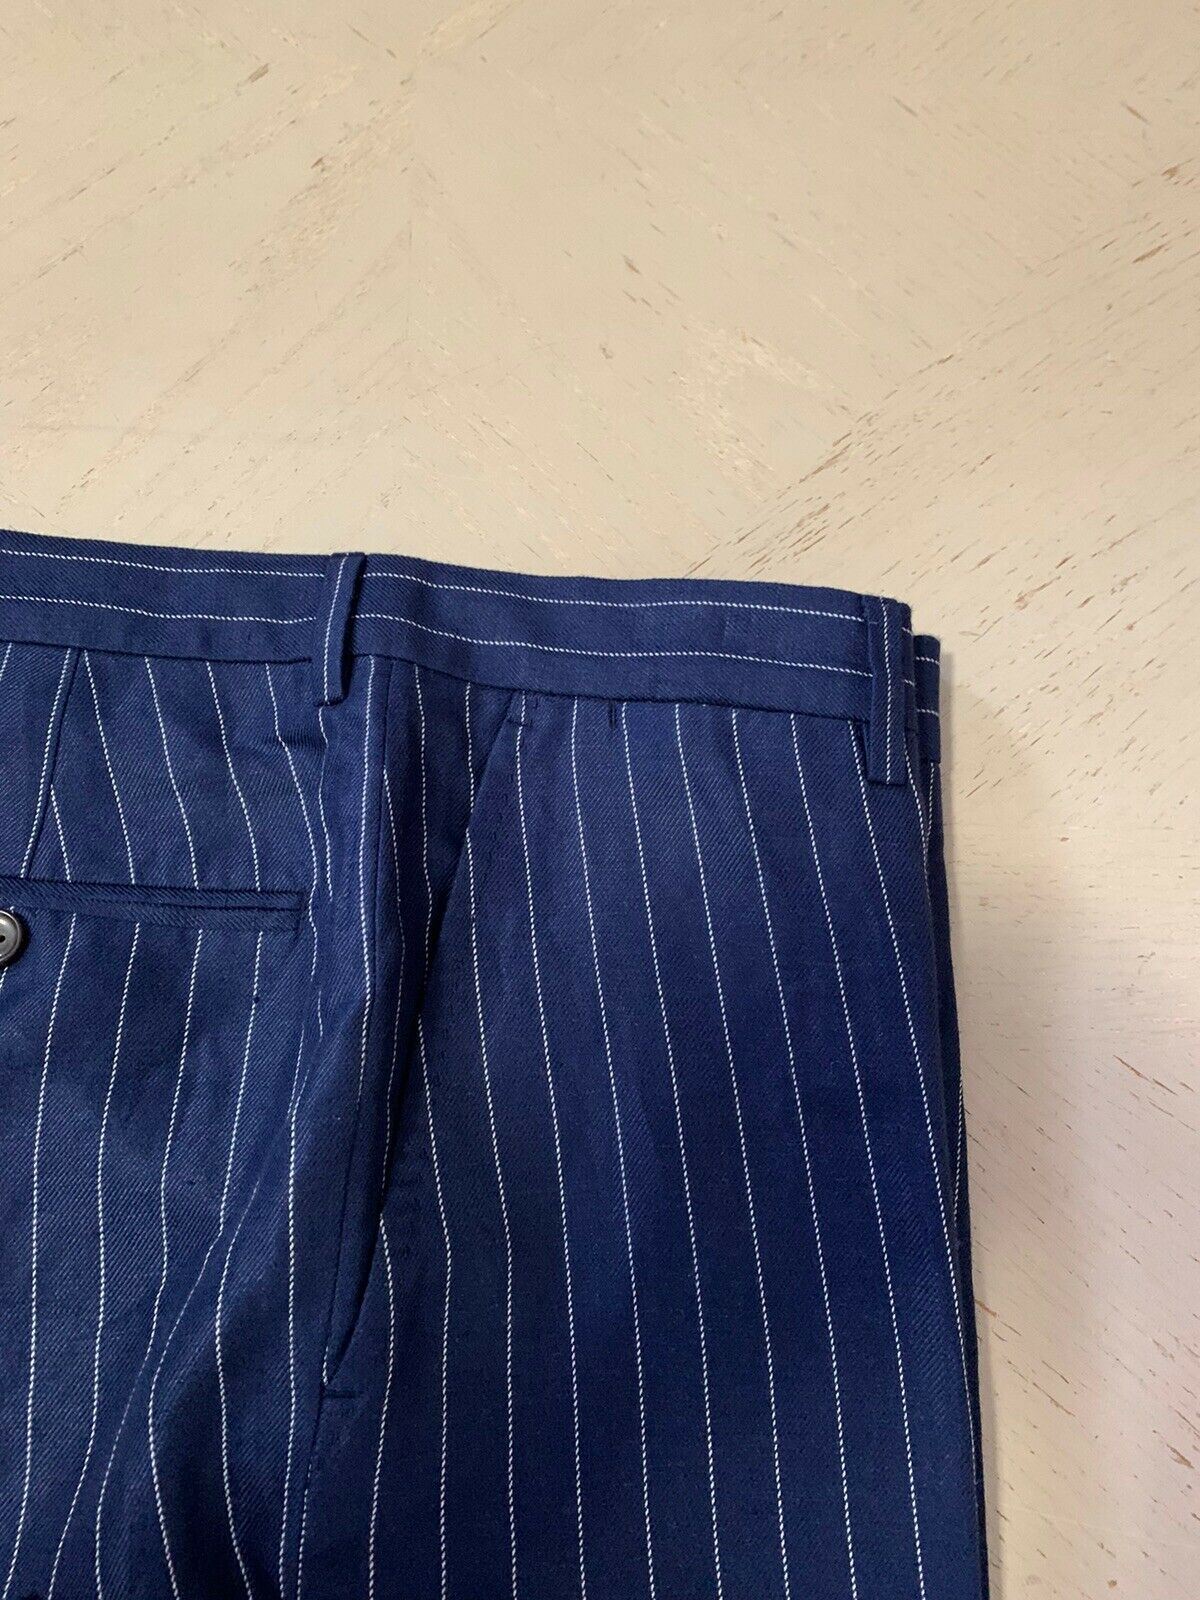 Neu mit Etikett: Polo Ralph Lauren Herrenhose, Blau, Größe 33 US